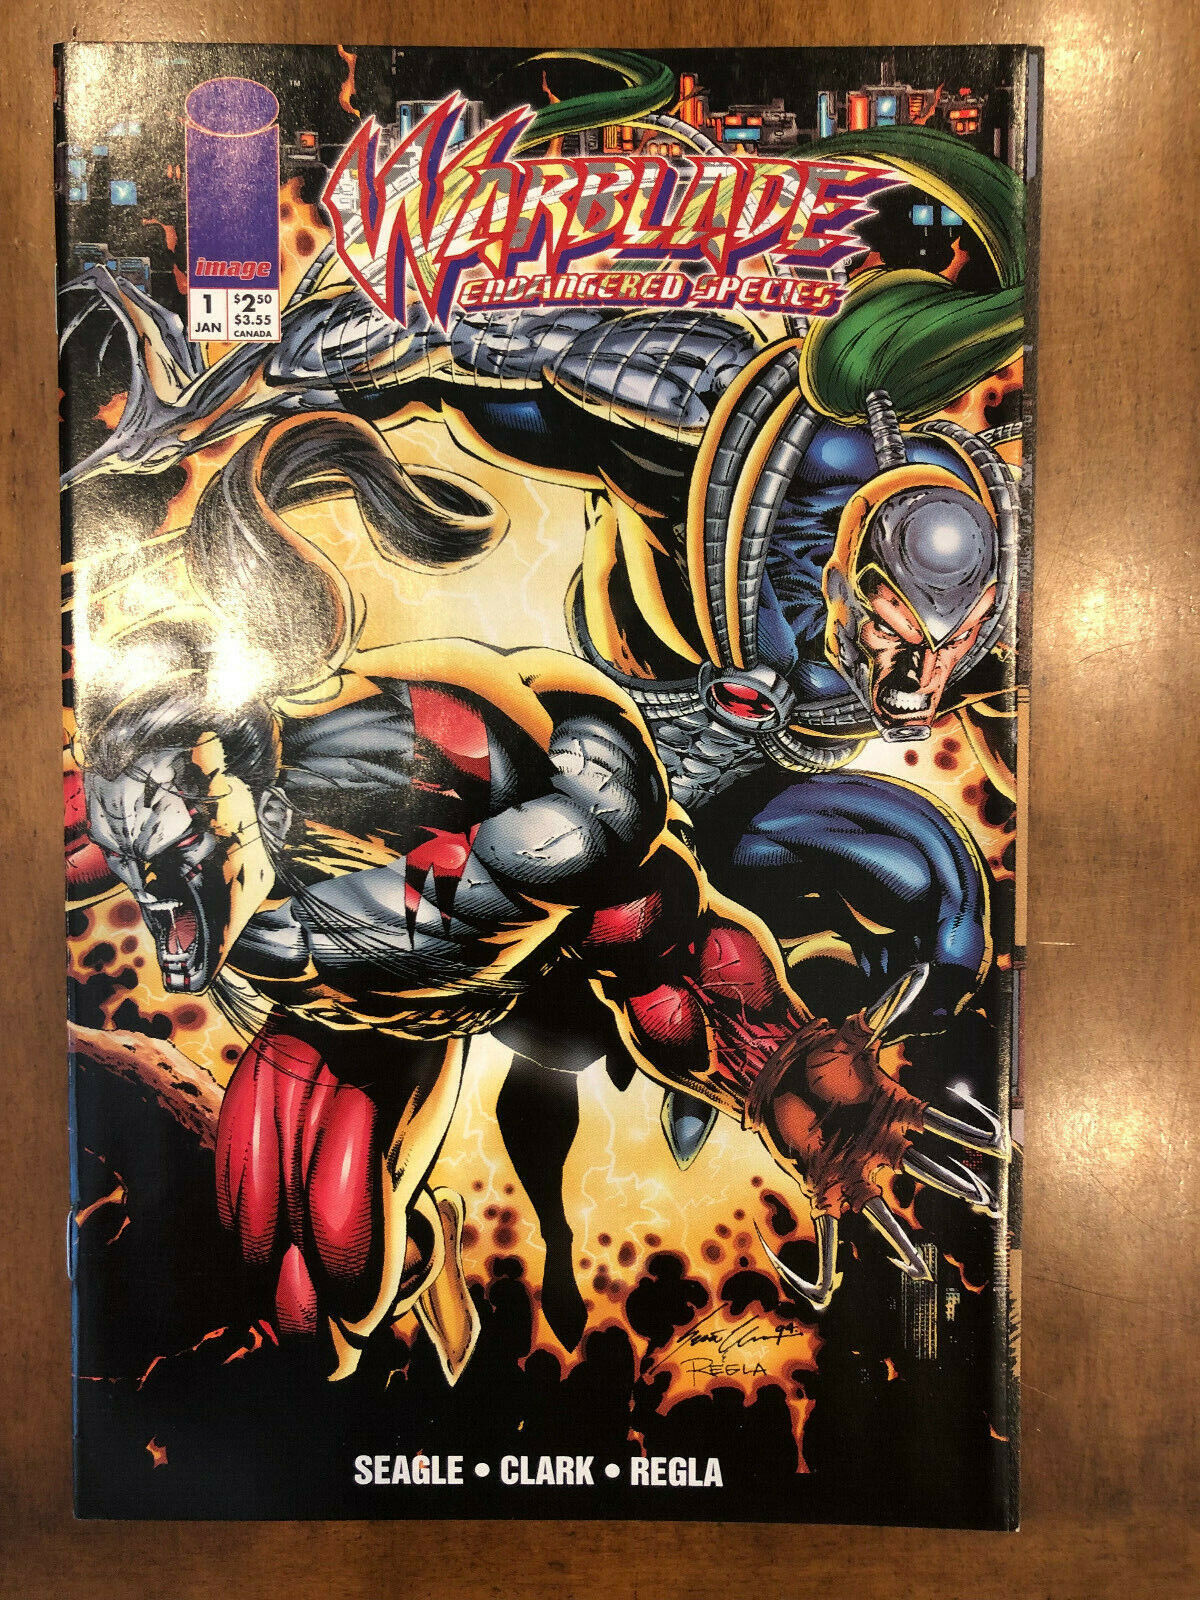 Image Comics Warblade: Endangered Species Issues #1-4 (1995) Excellent Copies